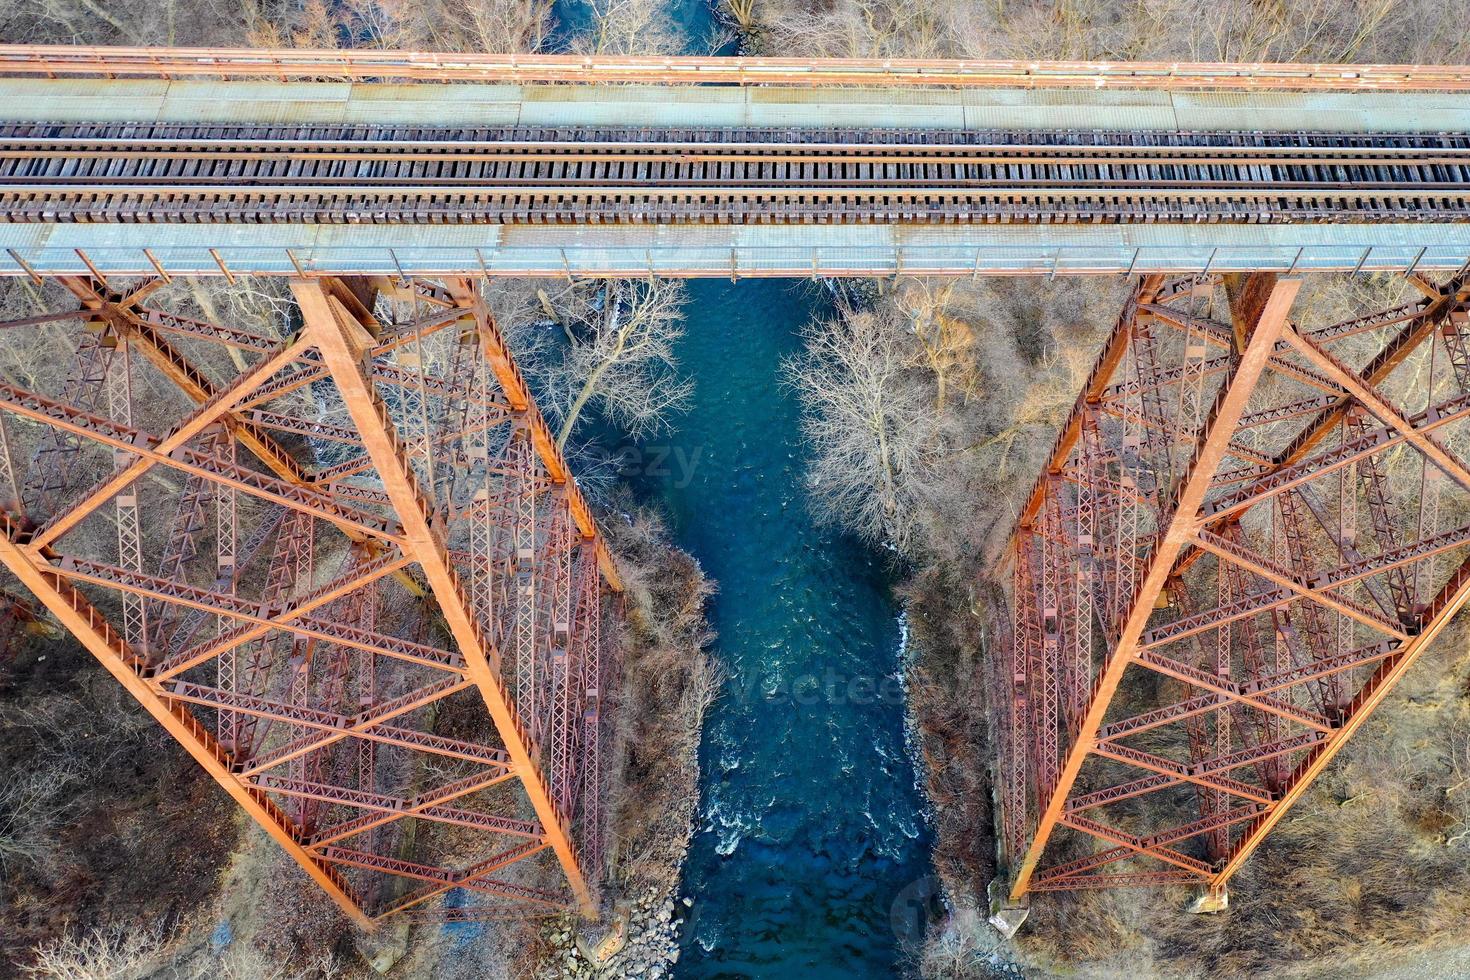 caballete del viaducto de moodna. el viaducto de moodna es un caballete de ferrocarril de hierro que se extiende sobre el arroyo moodna y su valle en el extremo norte de la montaña schunemunk en cornwall, nueva york. foto